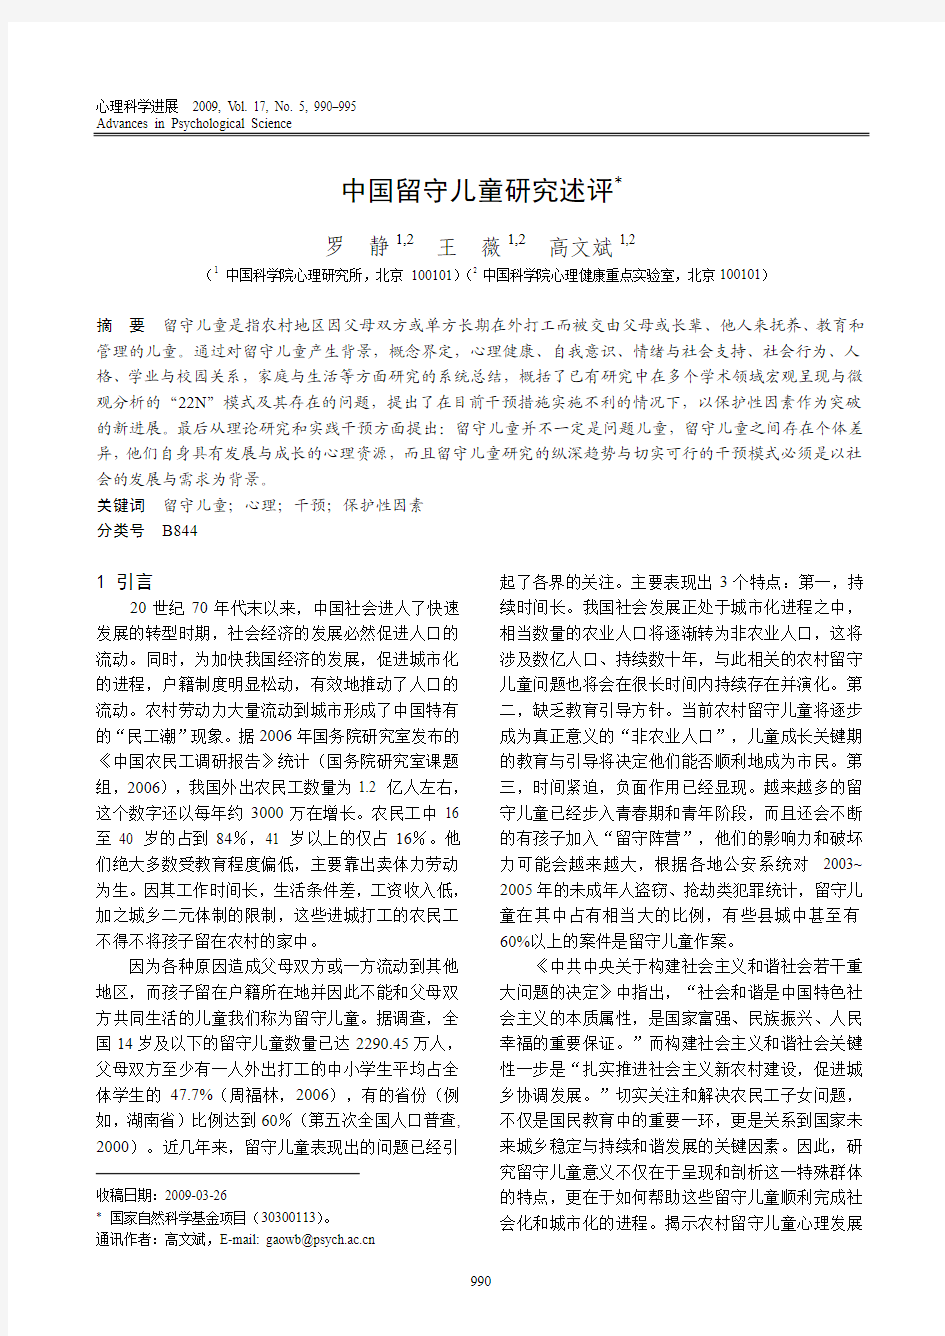 [1] 罗静,王薇,高文斌.  中国留守儿童研究述评[J]. 心理科学进展. 2009(05)